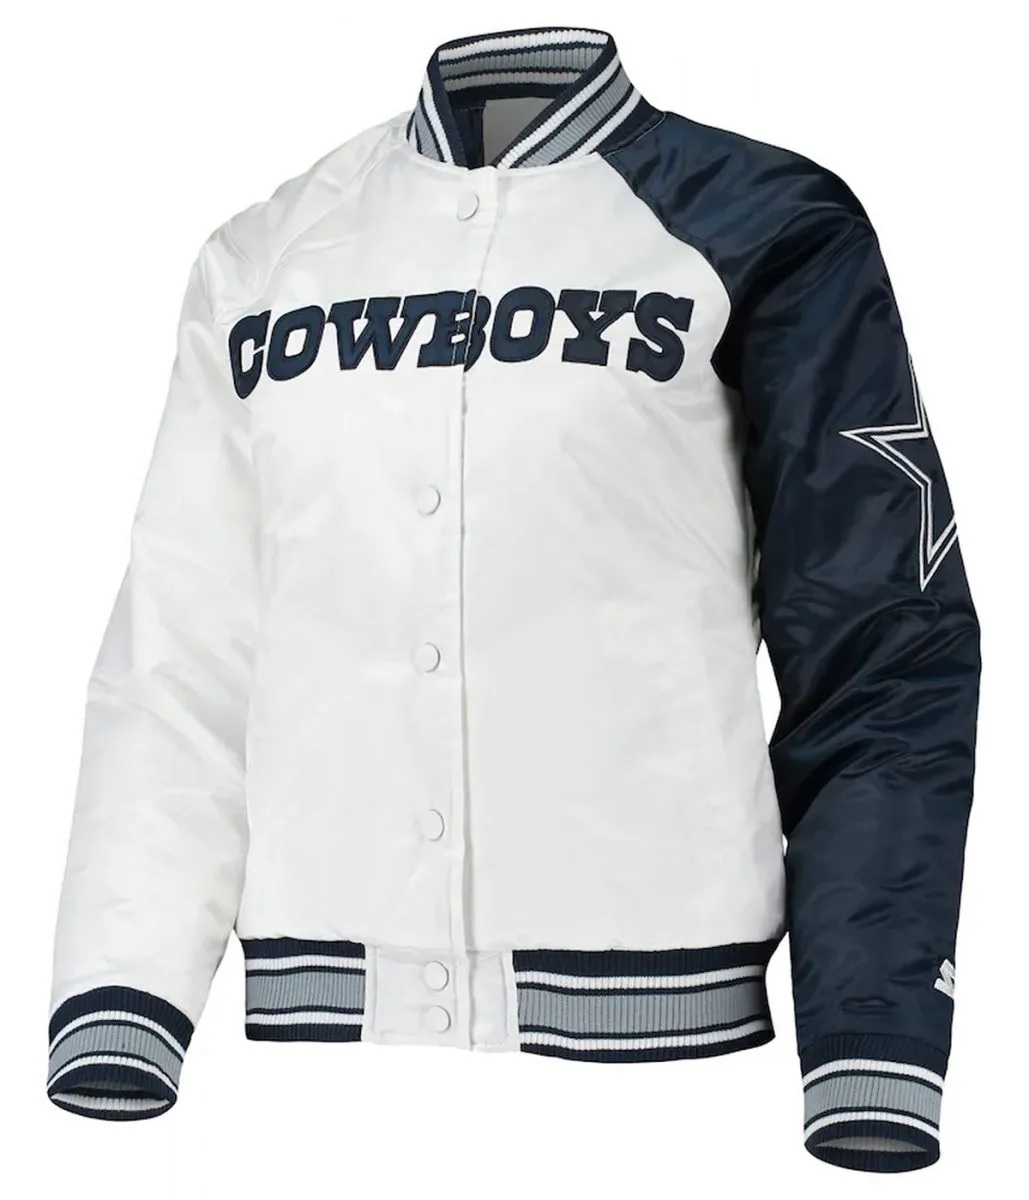 Starter Dallas Cowboys Endzone White and Blue Satin Jacket